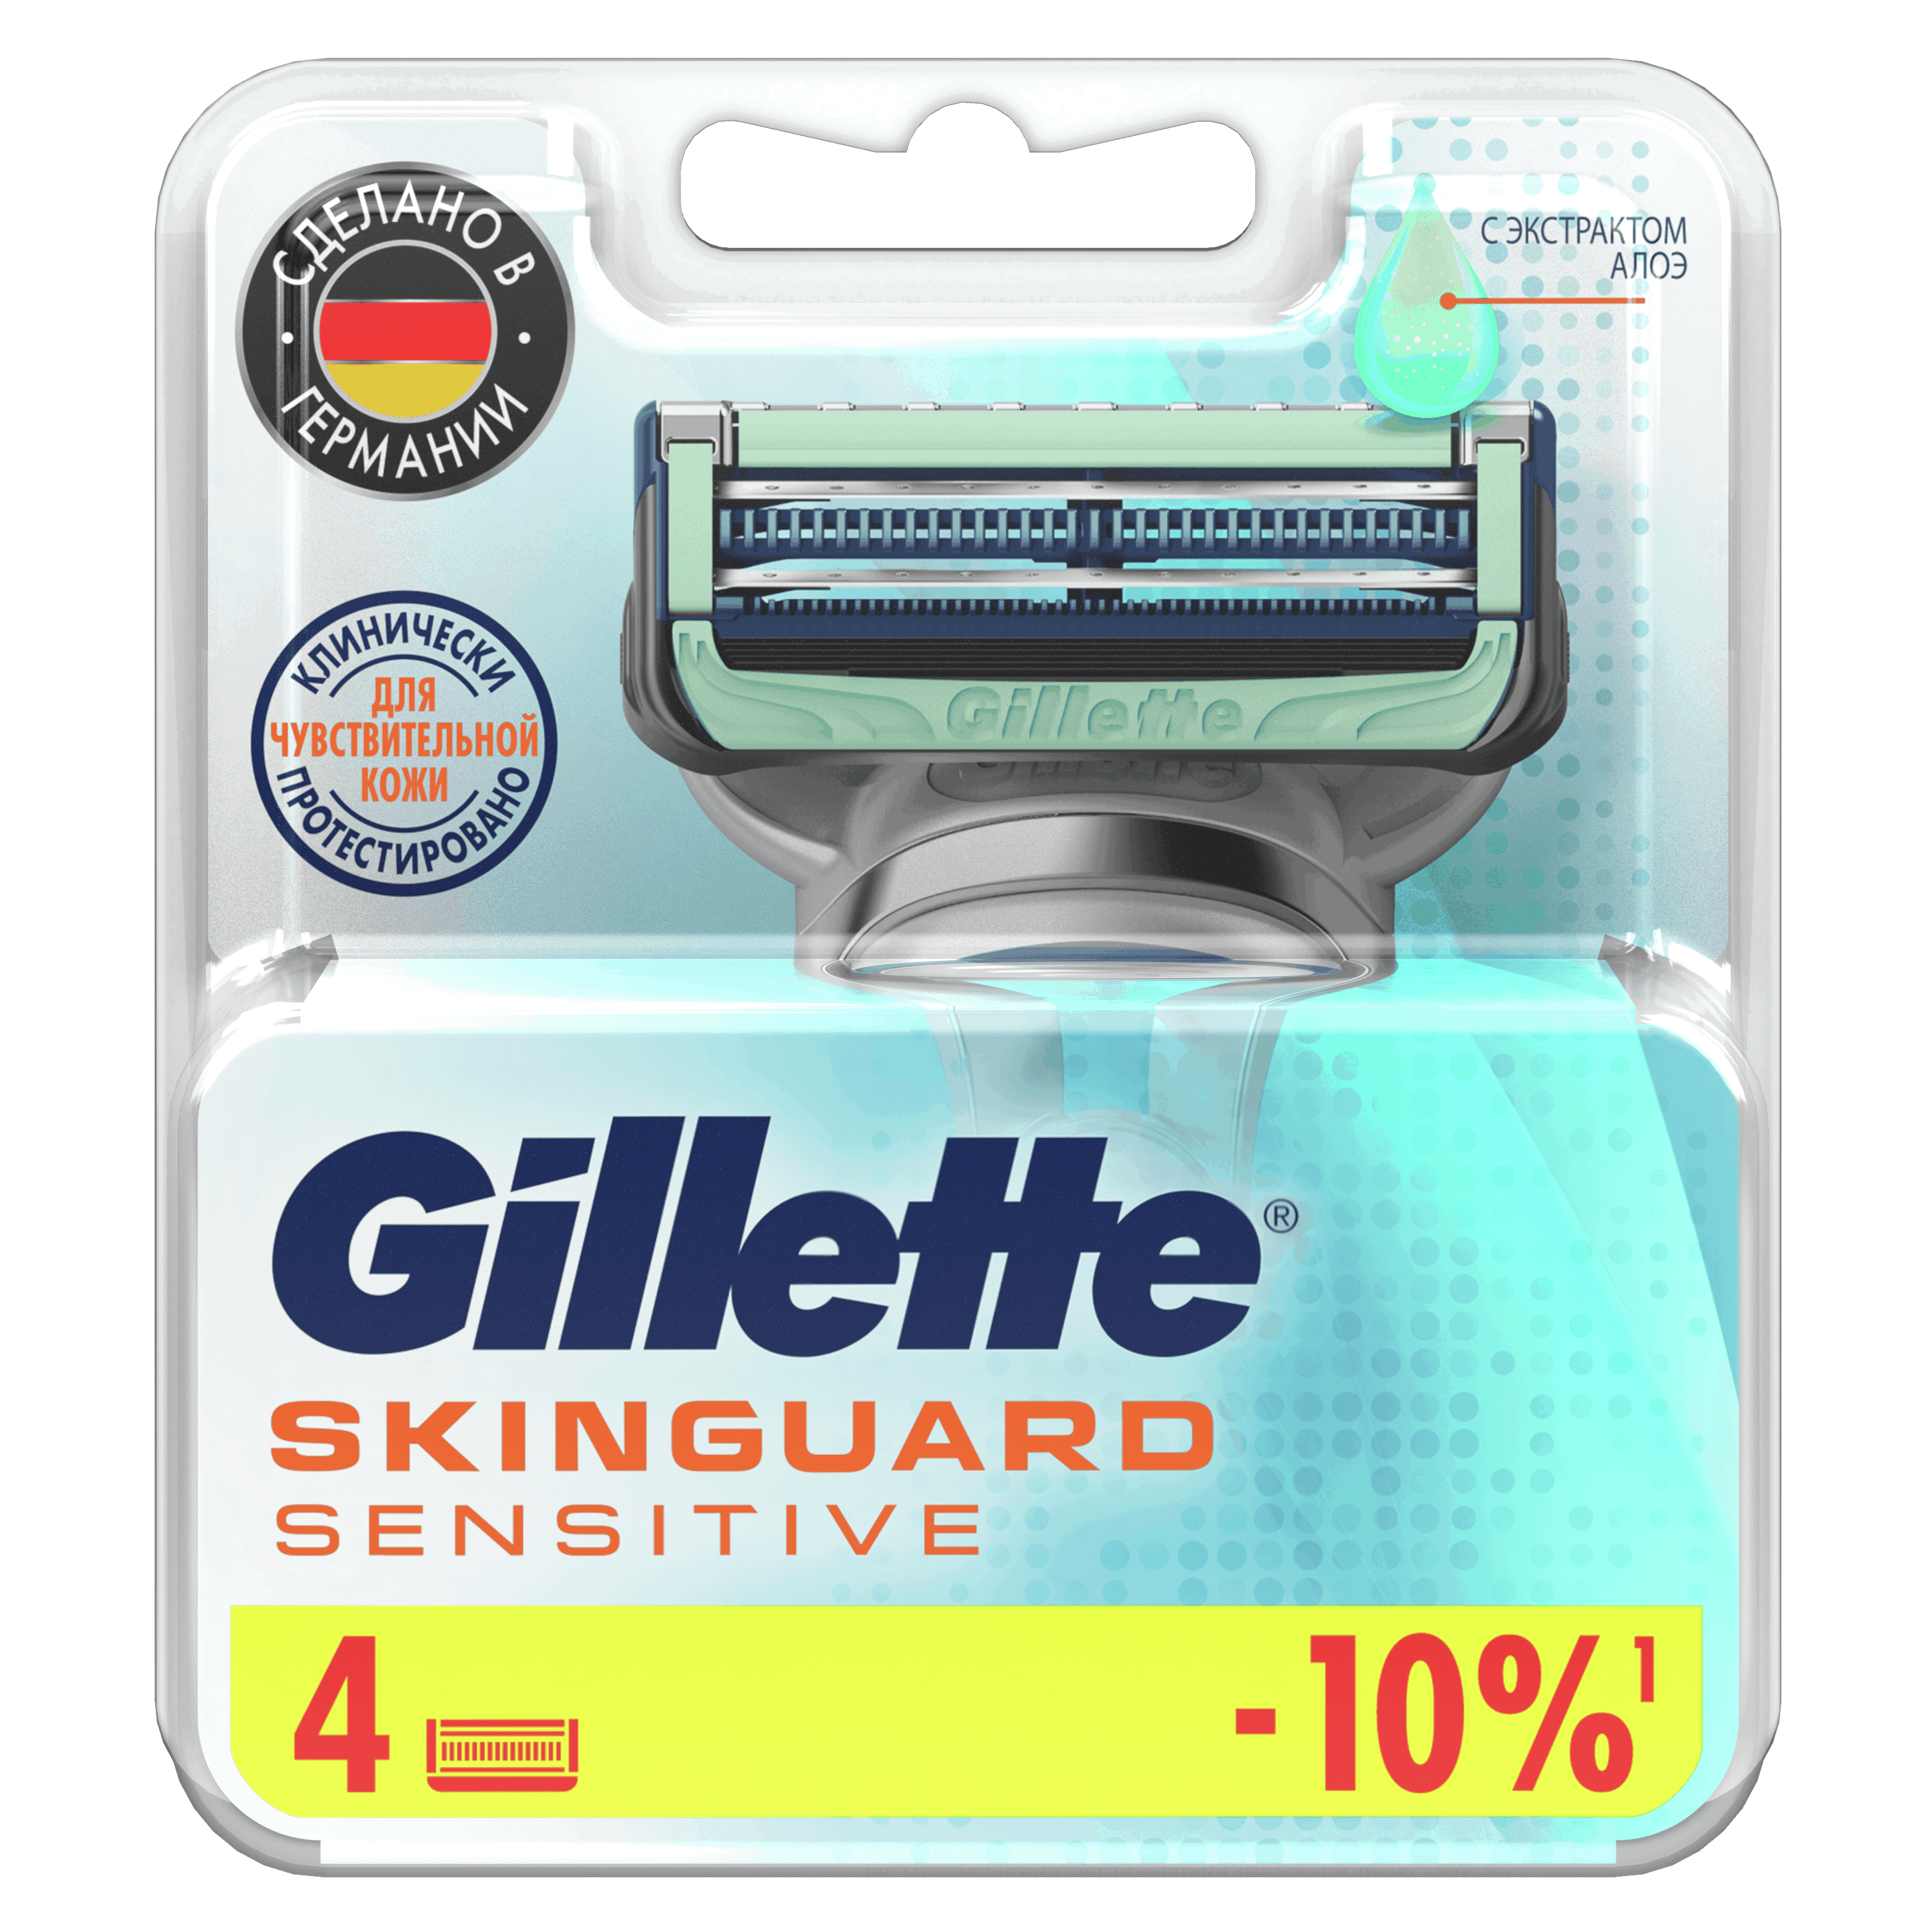 Сменные кассеты для бритья GILLETTE SKINGUARD Sensitive 4шт gillette сменные кассеты для мужской бритвы gillette king c gillette с 2 лезвиями для бритья и контуринга